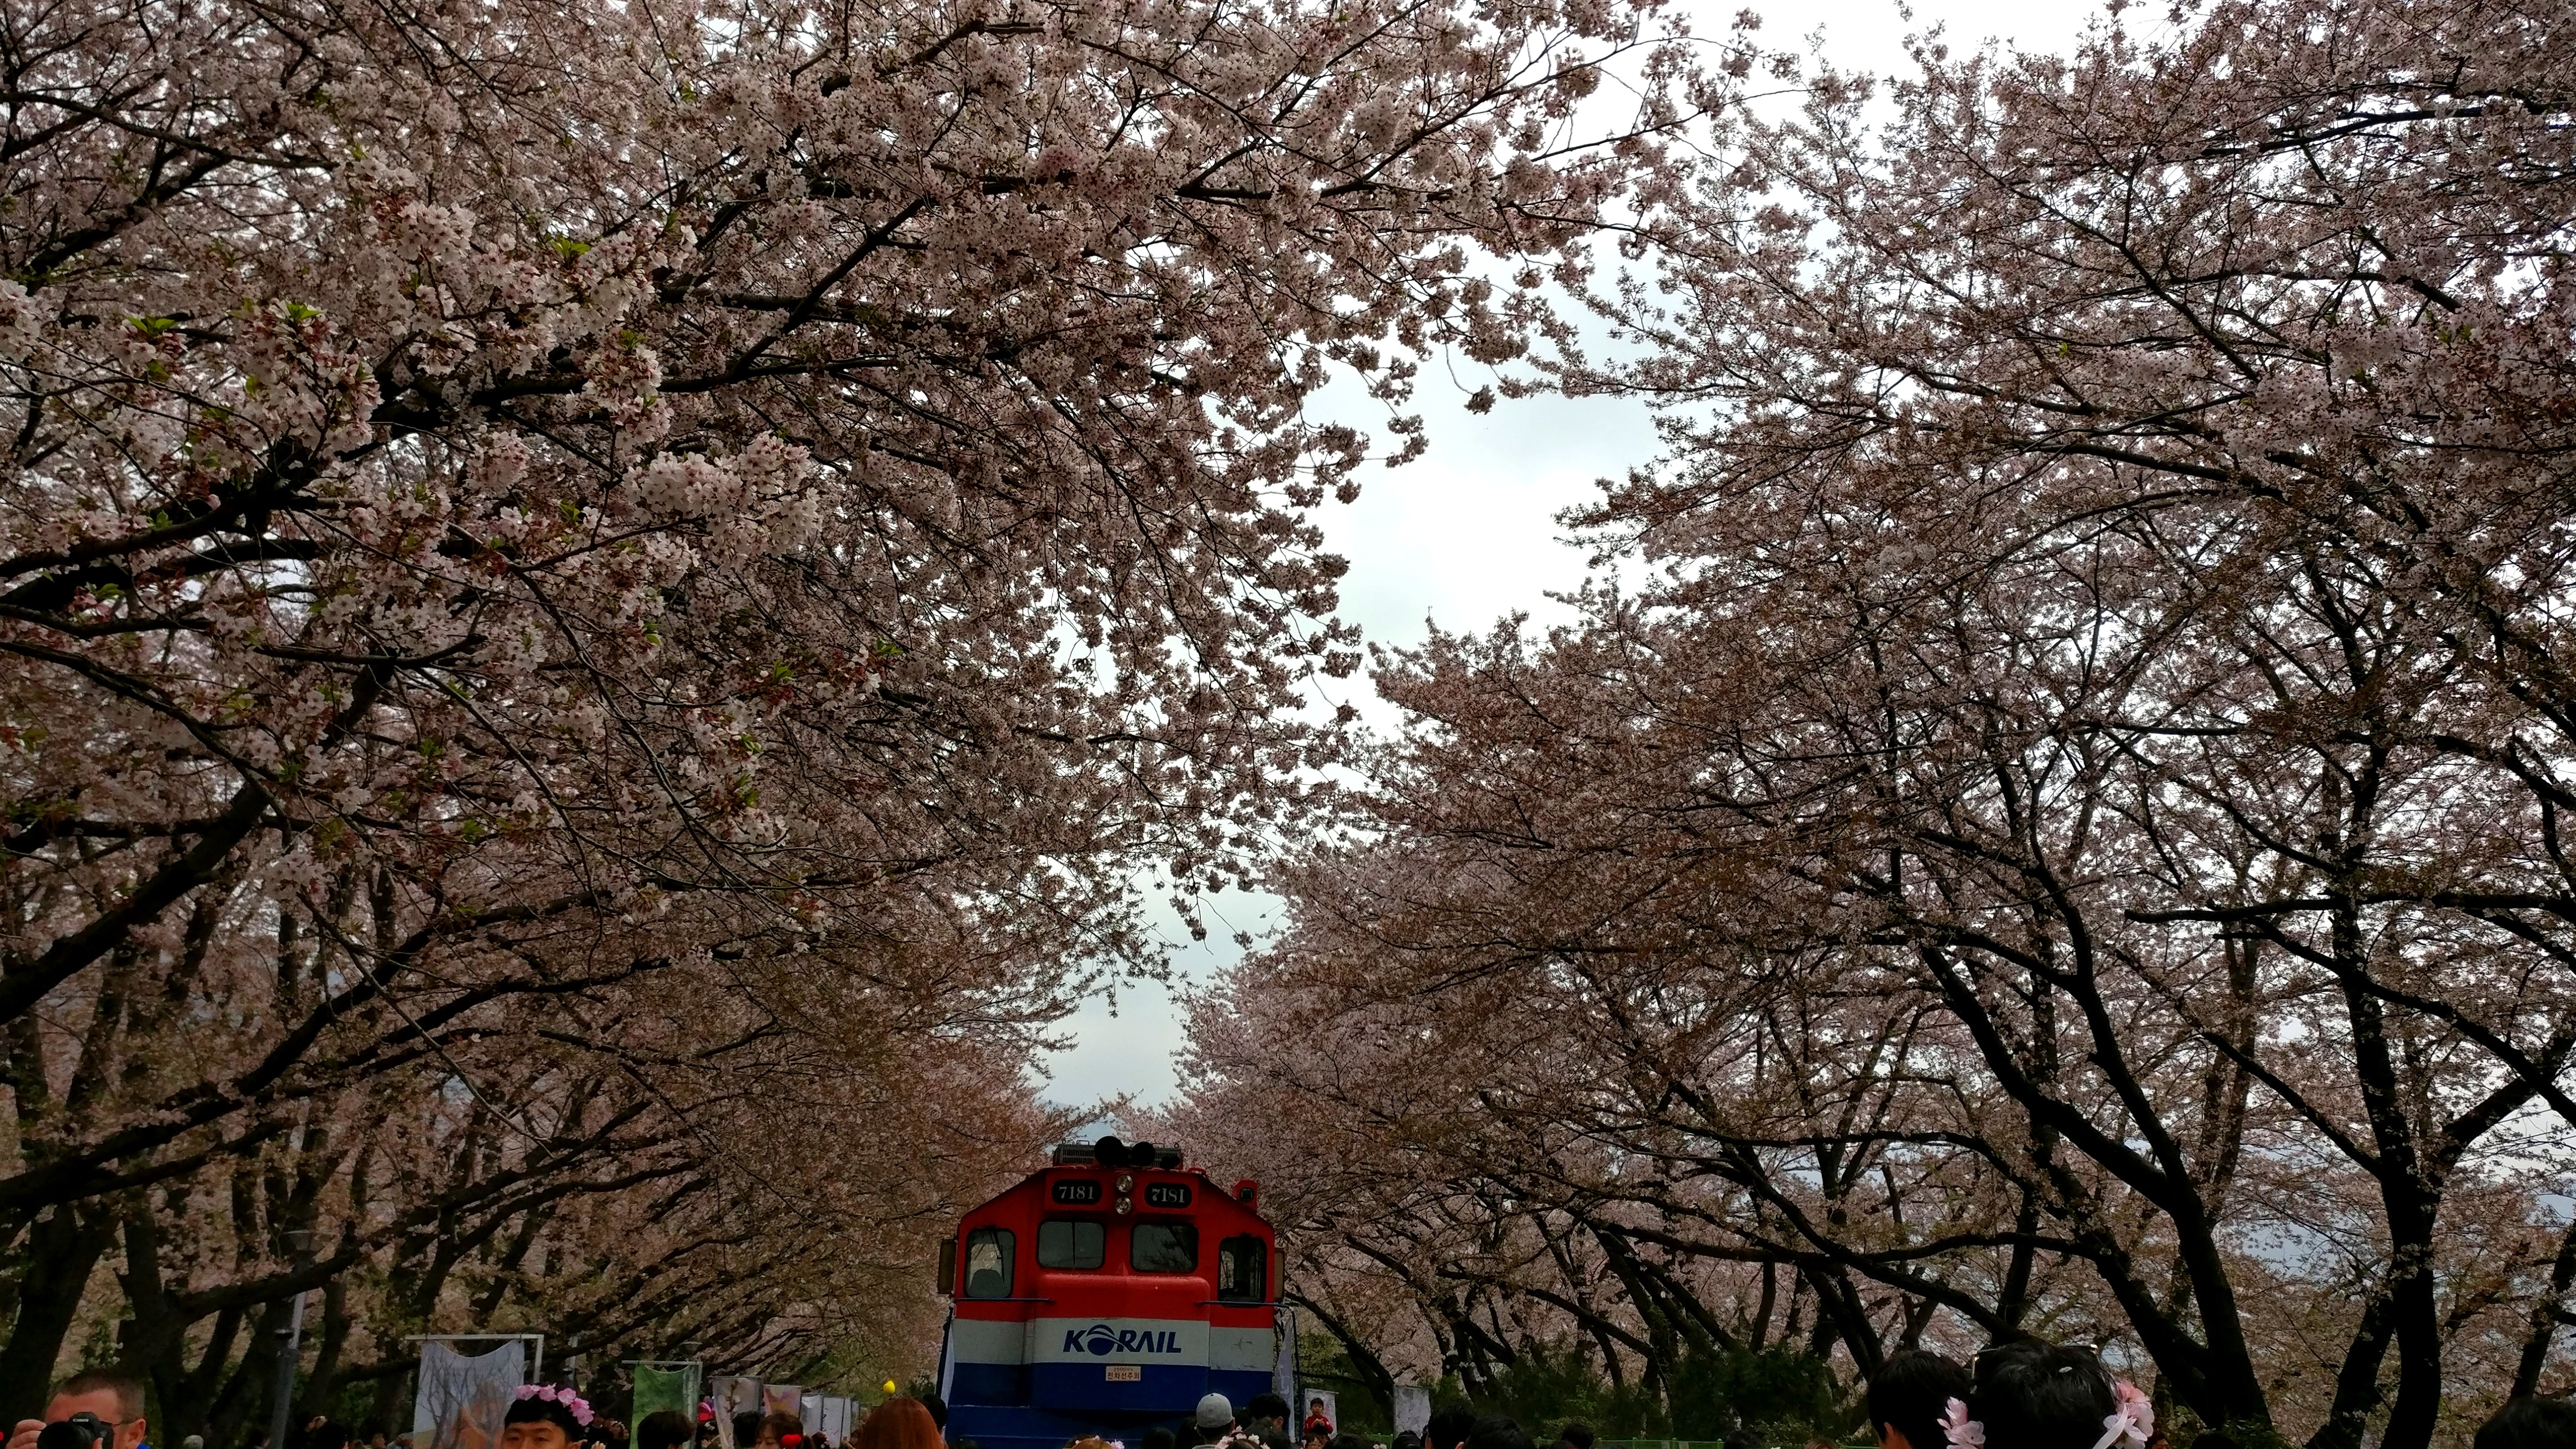 Jinhae cherry blossom festival